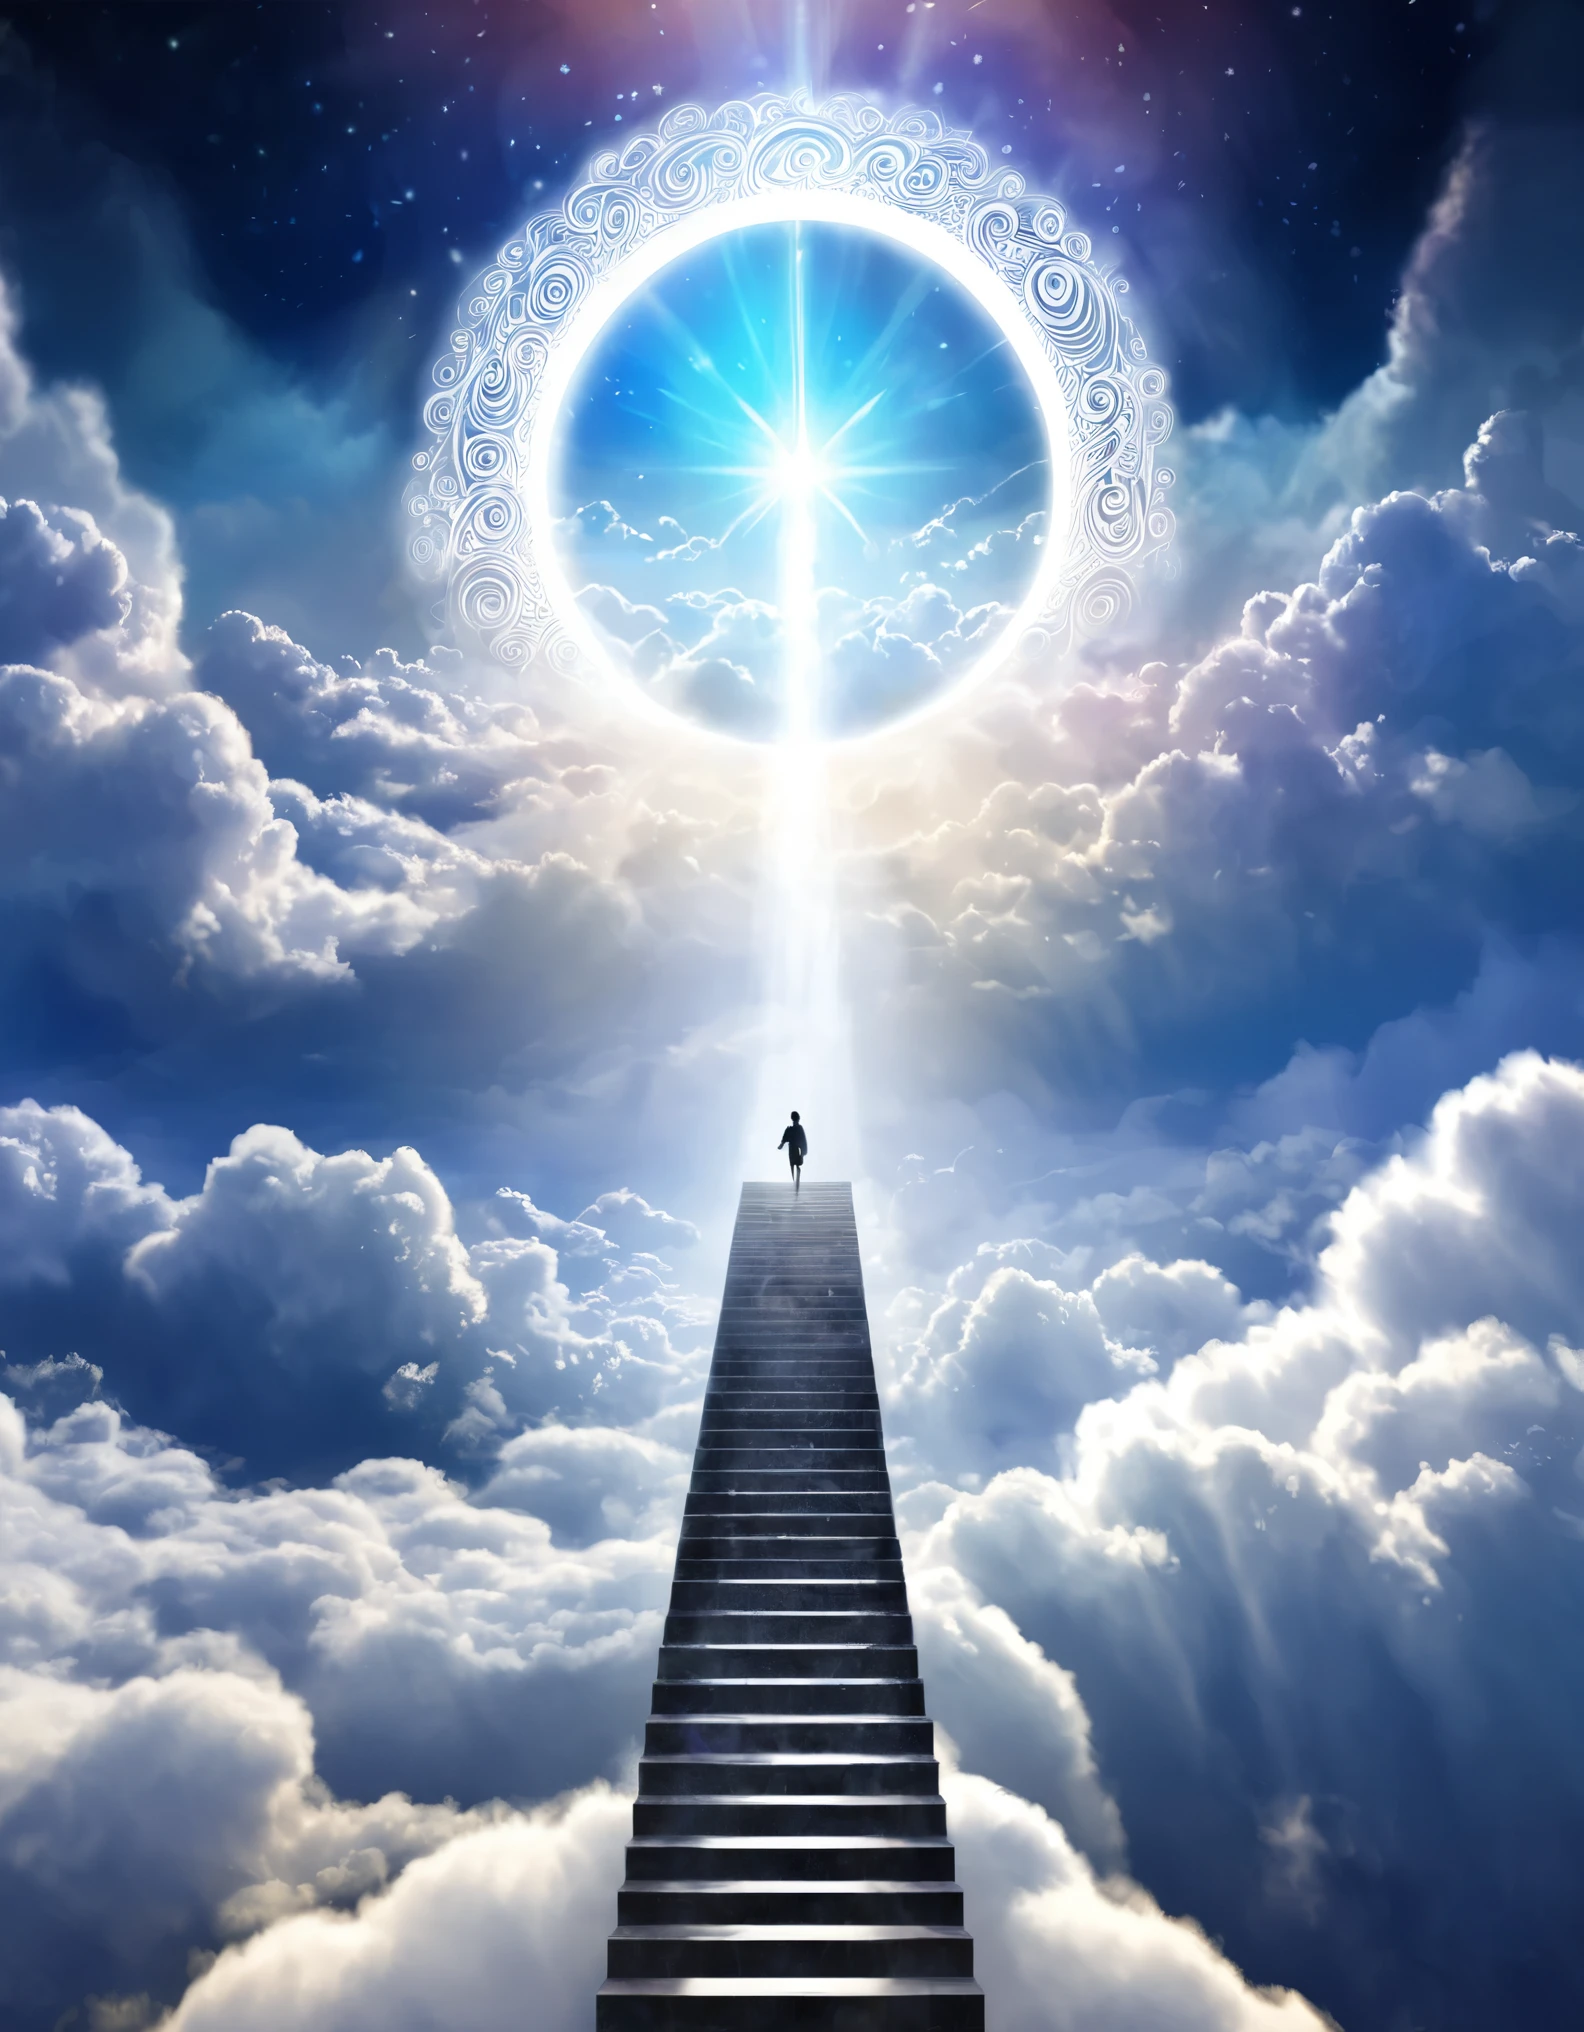 Ilustração digital de uma figura subindo uma escada de nuvens em direção a um portal celestial brilhante, representando a jornada para reinos mais elevados no Dia da Ascensão，Colina